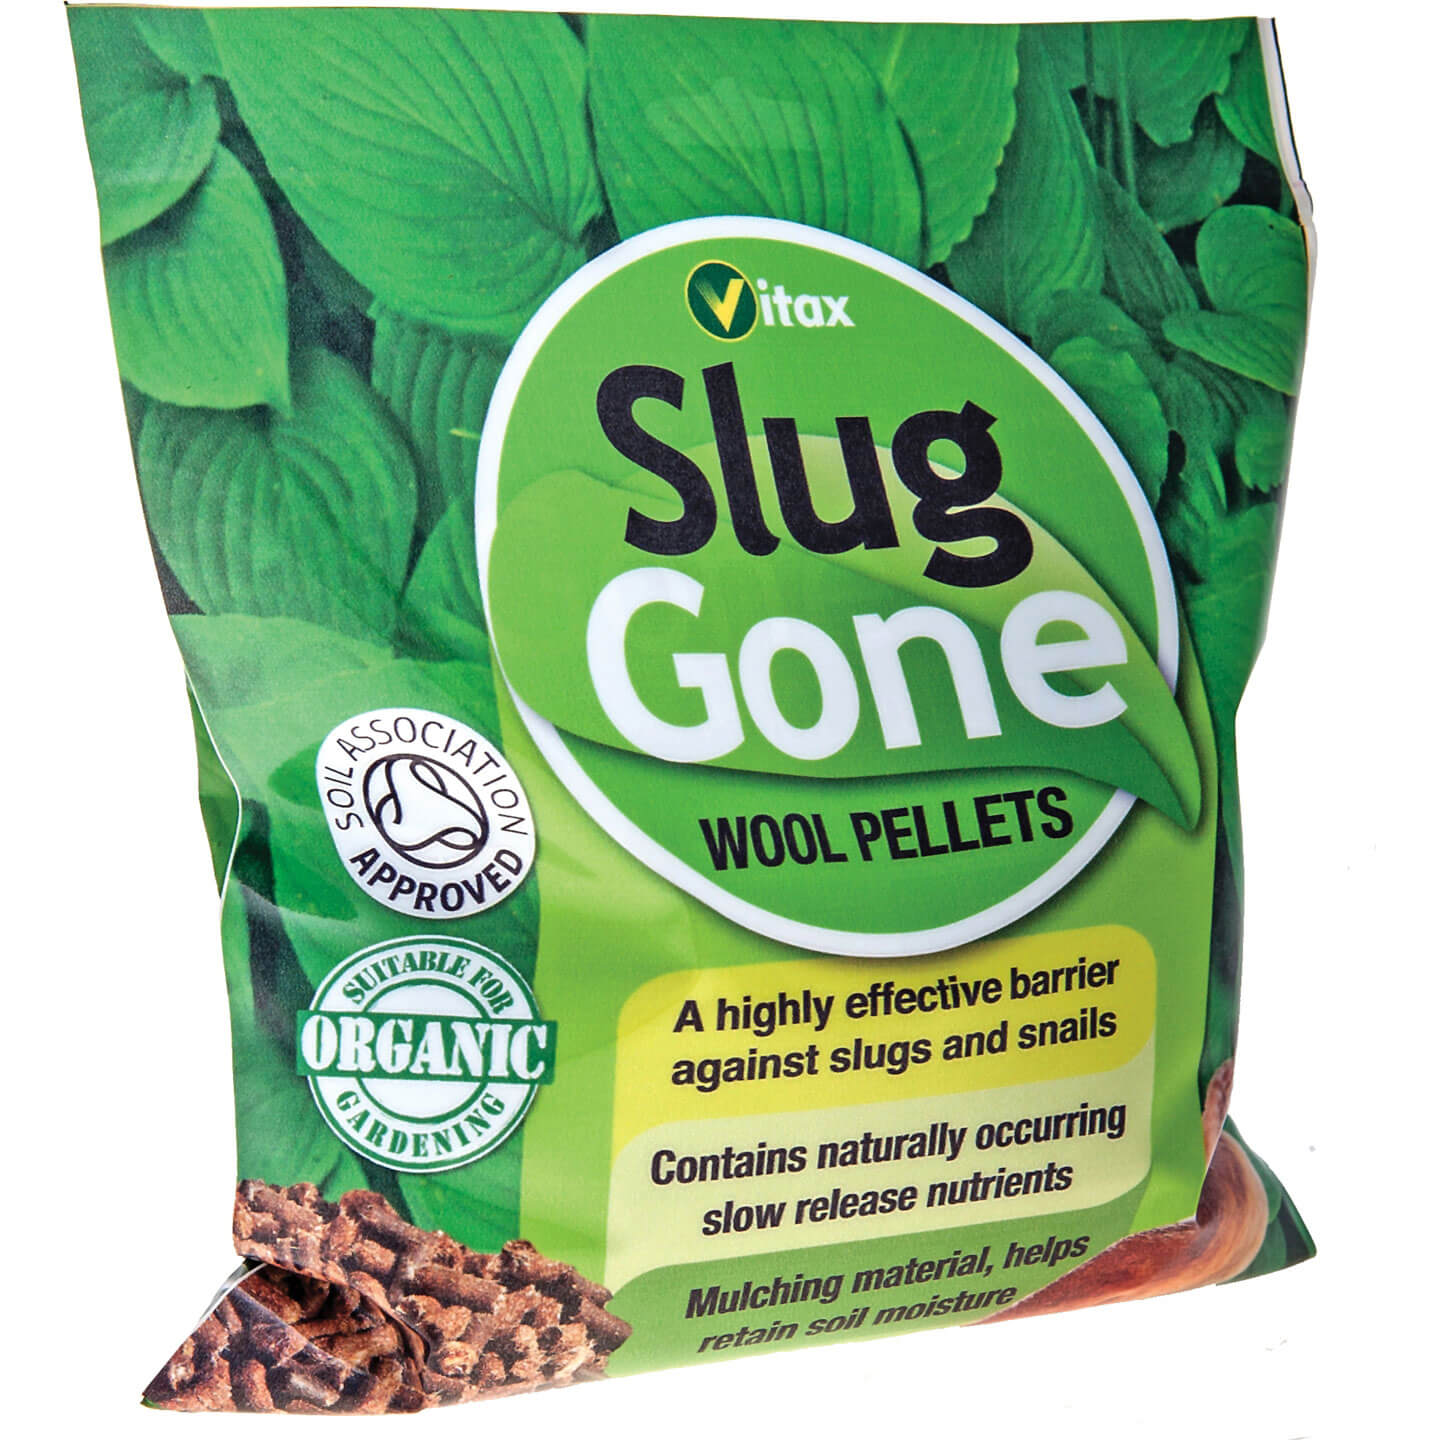 Vitax Slug Gone Wool Pellets for Killing Slugs 1 Litre